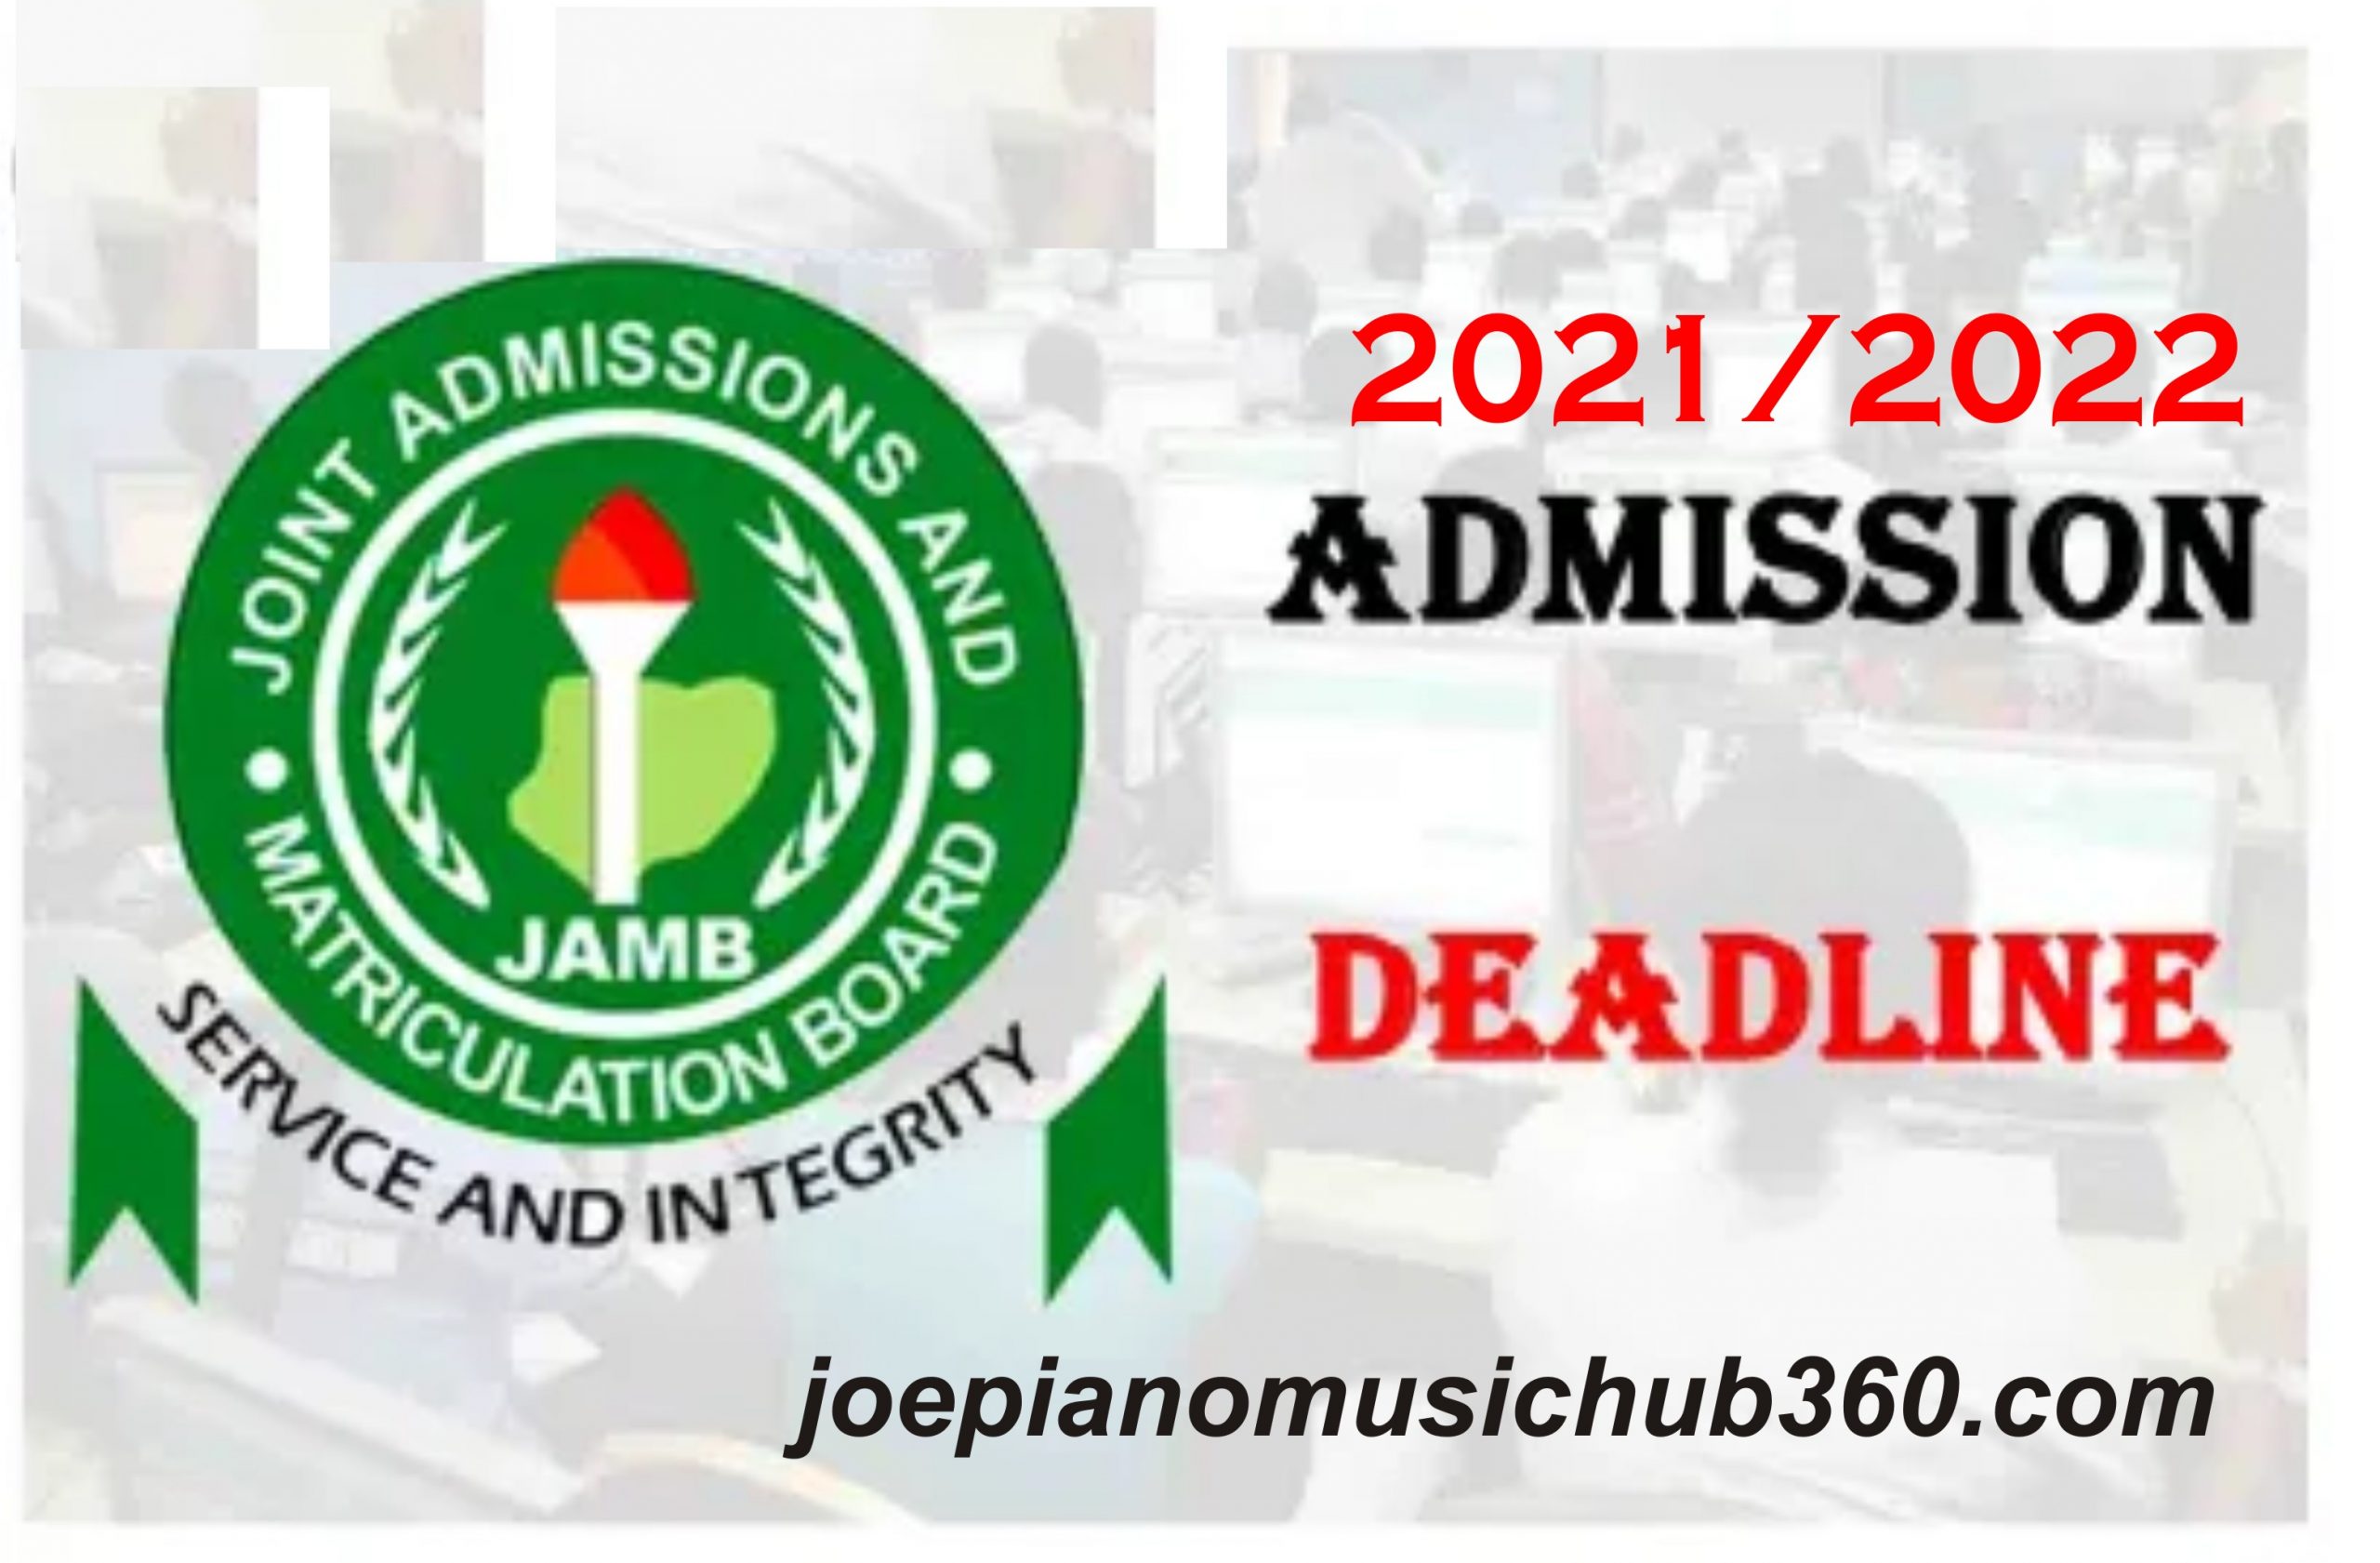 JAMB 2021 ADMISSION DEADLINE